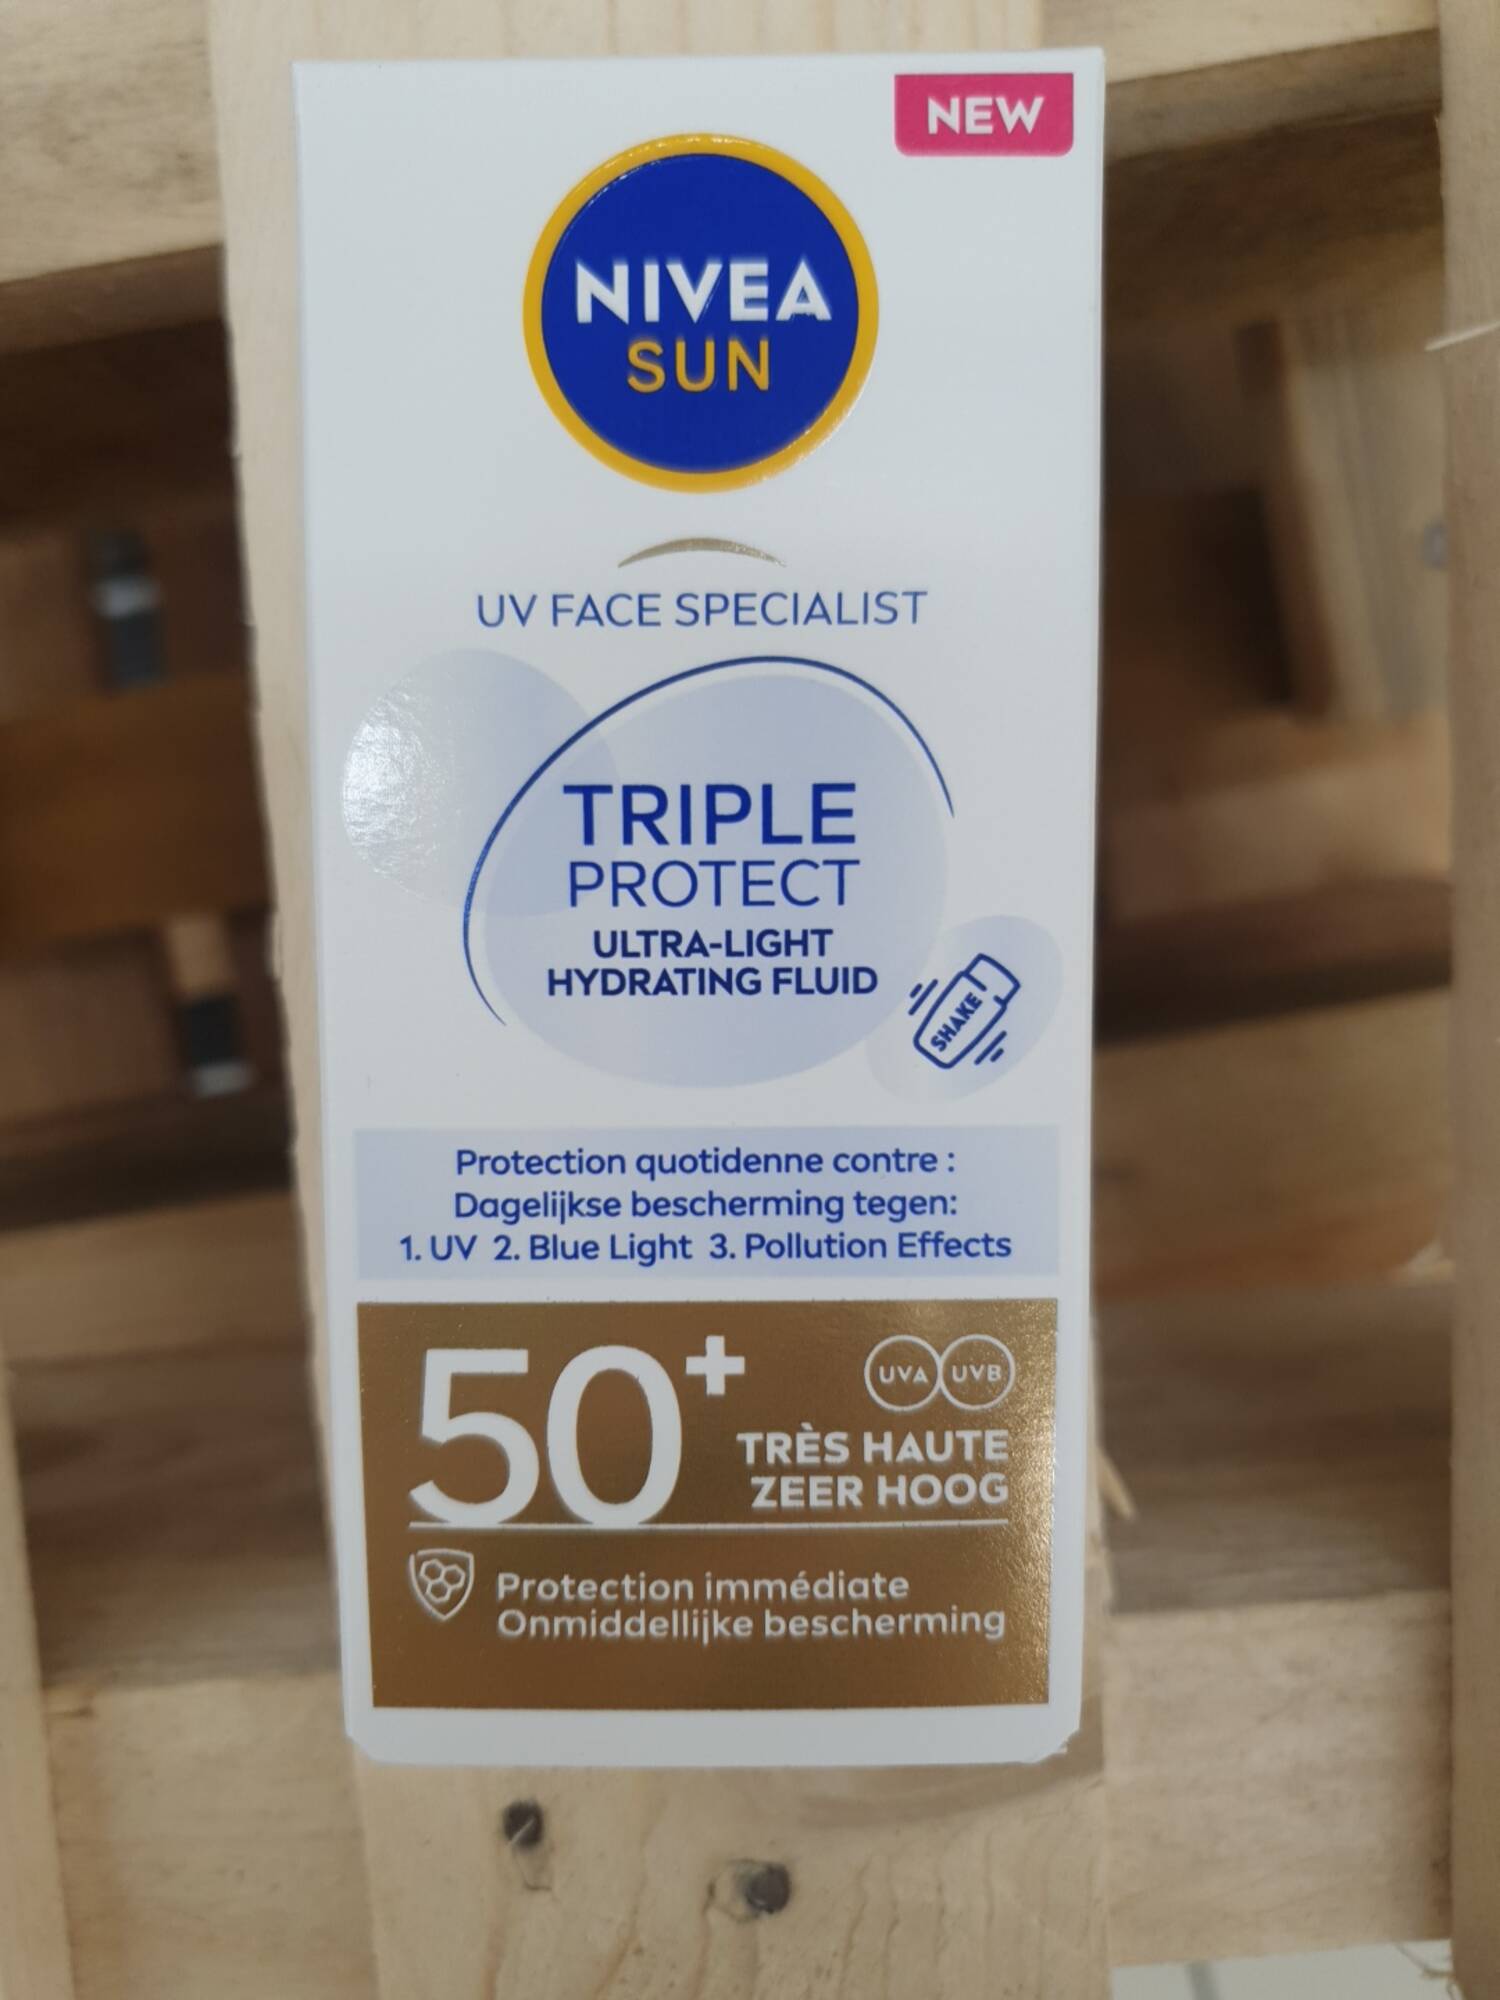 NIVEA SUN - UV face specialist - Triple protect ultra-light hydrating fluid 50+